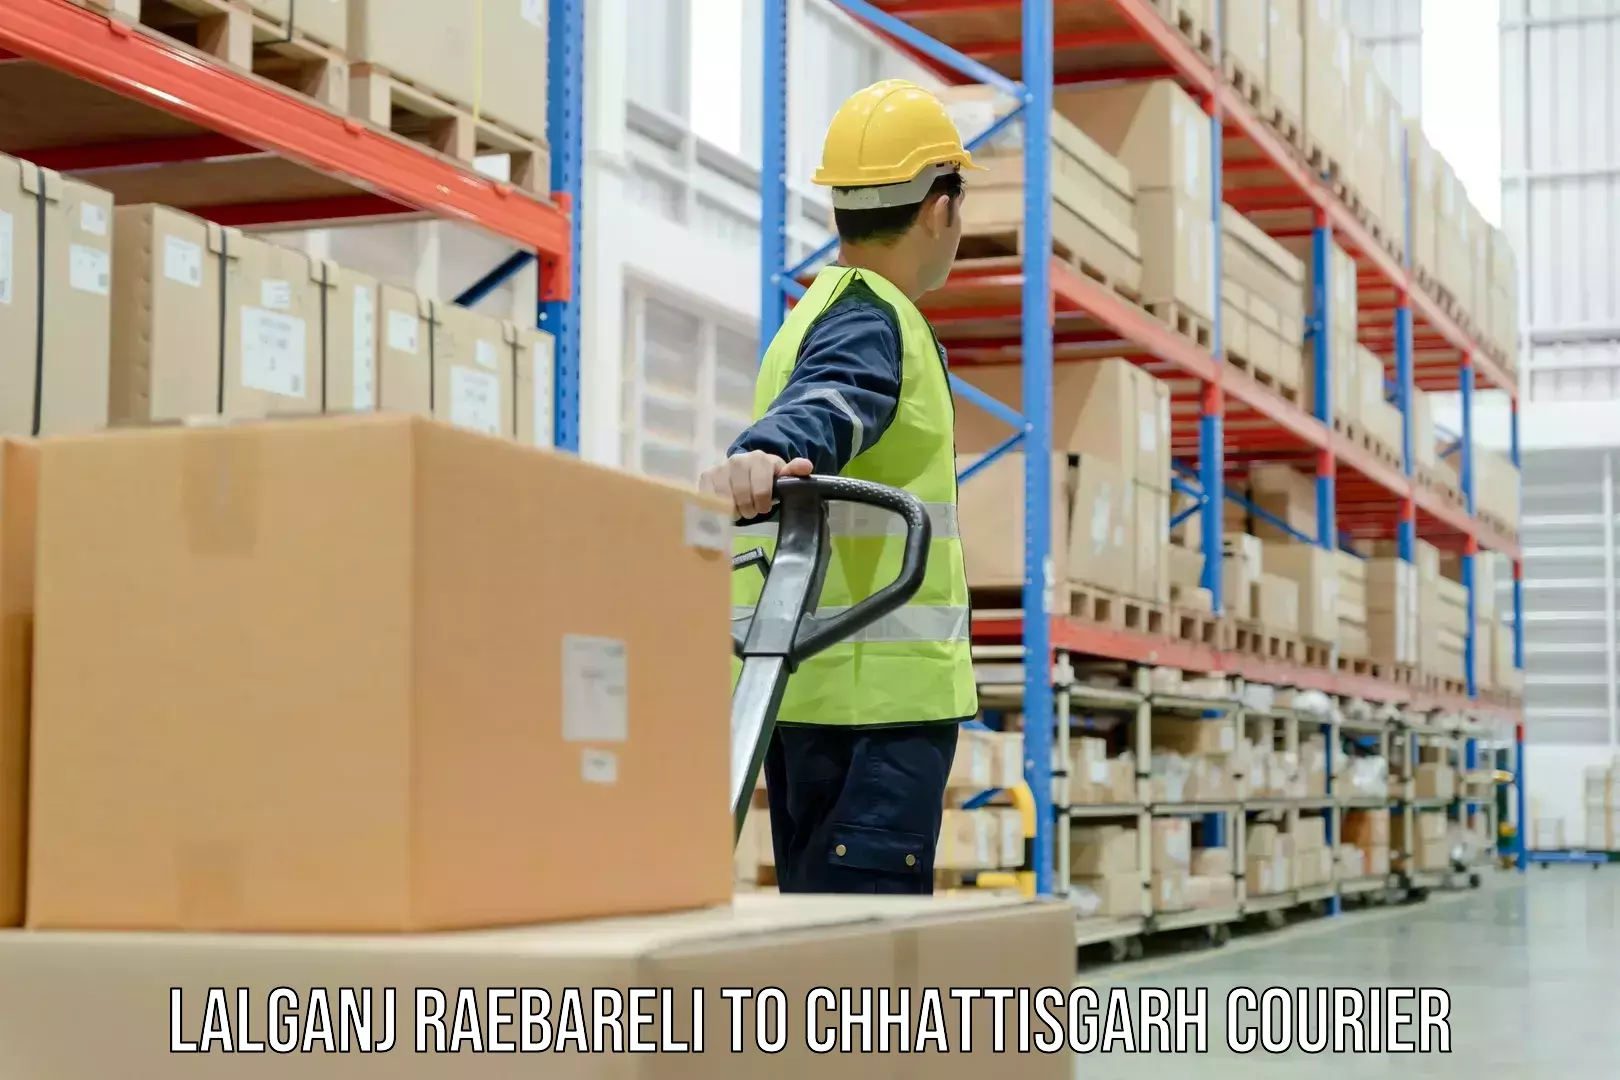 Customer-centric shipping Lalganj Raebareli to Nagri